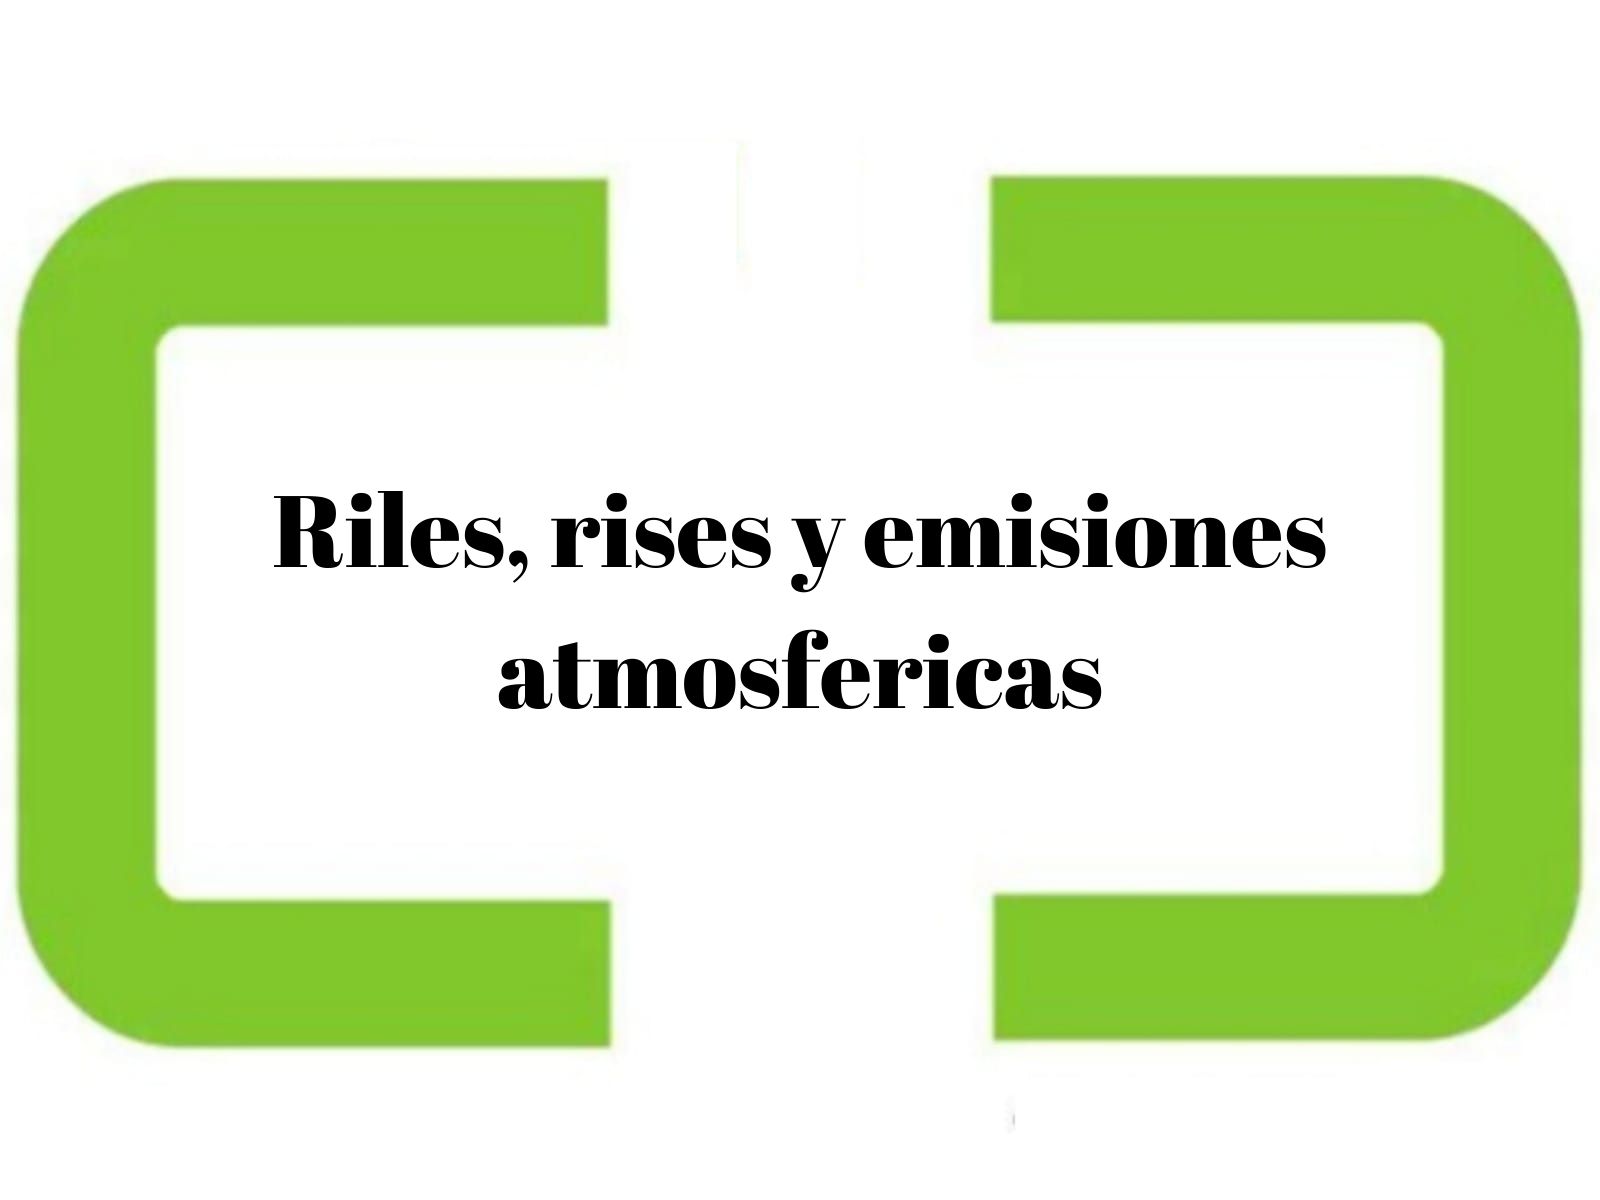 Riles, rises y emisiones atmosfericas